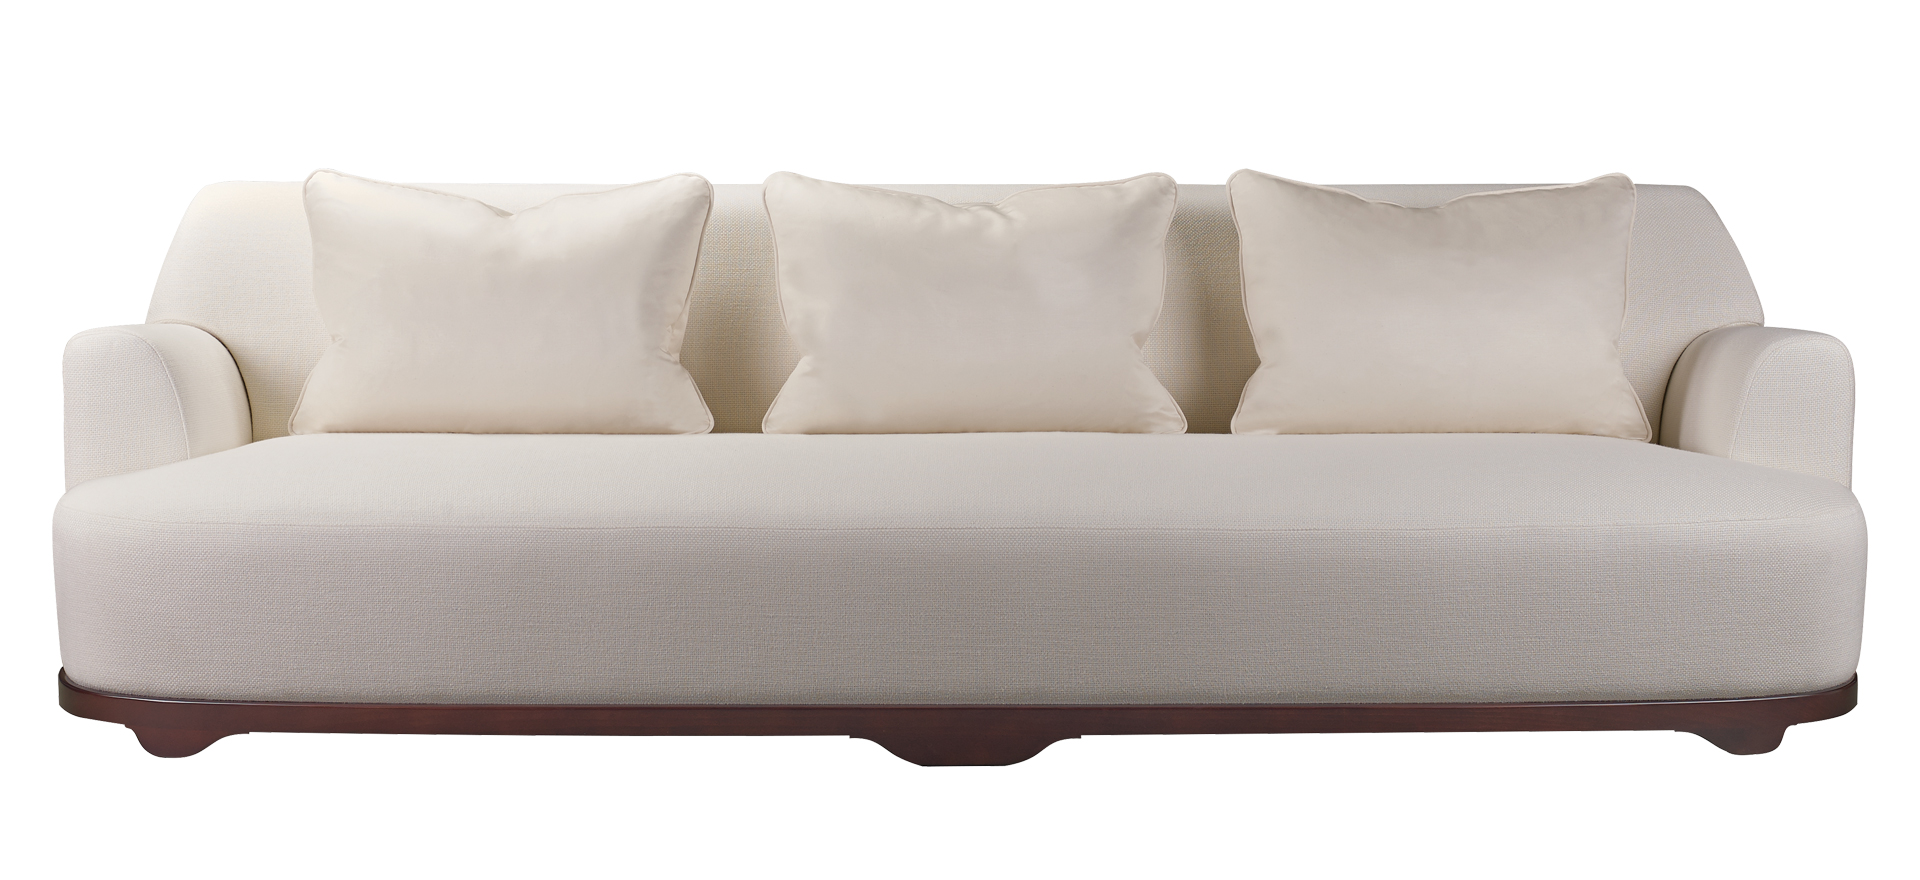 Dorian&nbsp;— деревянный диван с обивкой из ткани или кожи, доступный в различных размерах и формах, из каталога Promemoria | Promemoria